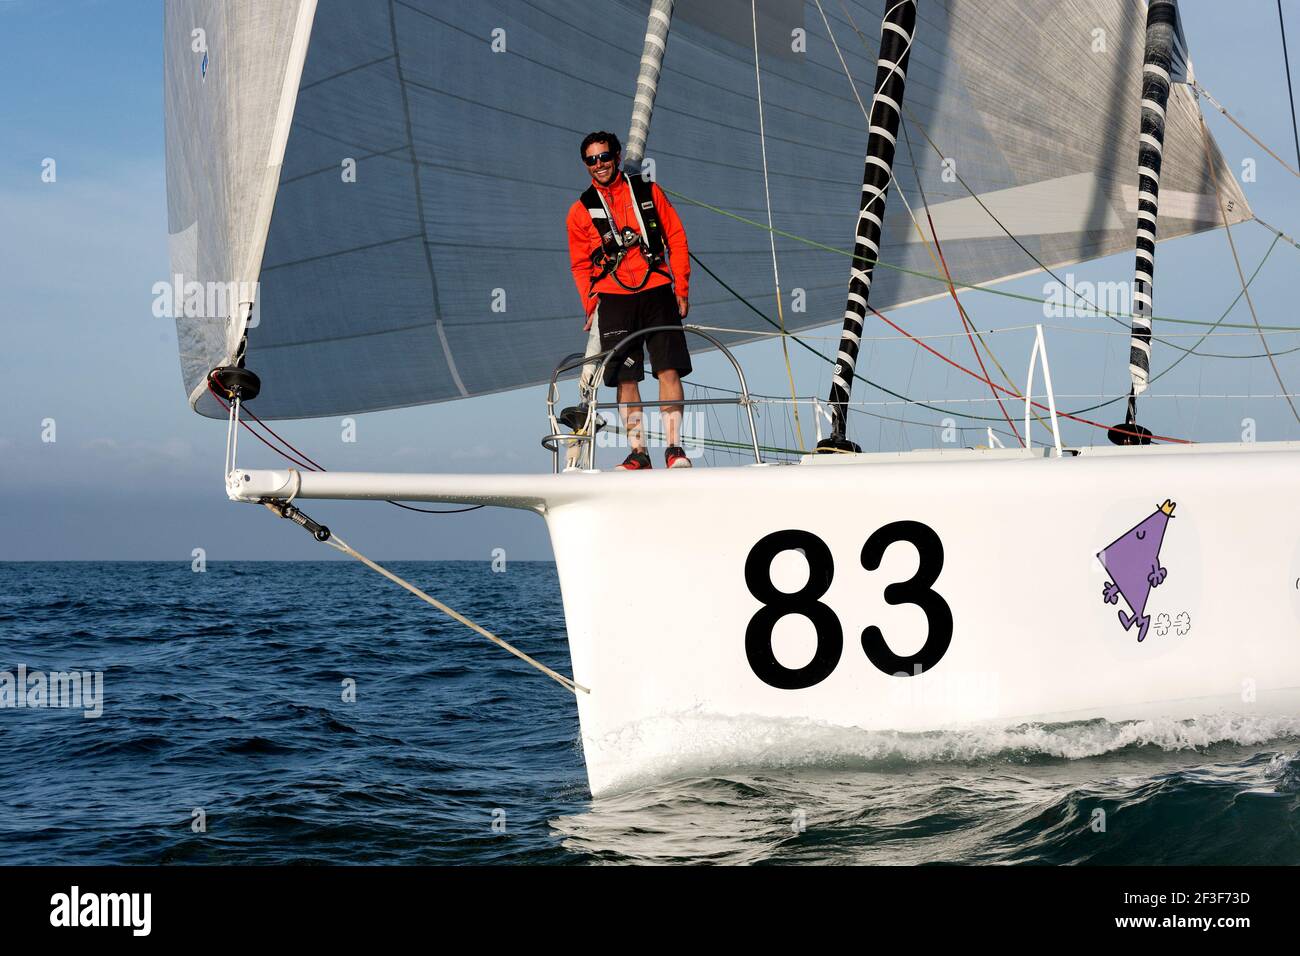 Vers un monde sans sida, Clément Giraud finishing the IMOCA sailing race Vendée - Arctic - Les Sables d'Olonne on July 14, 2020 in Les Sables d'Olonne, France - Photo François Van Malleghem / DPPI Stock Photo